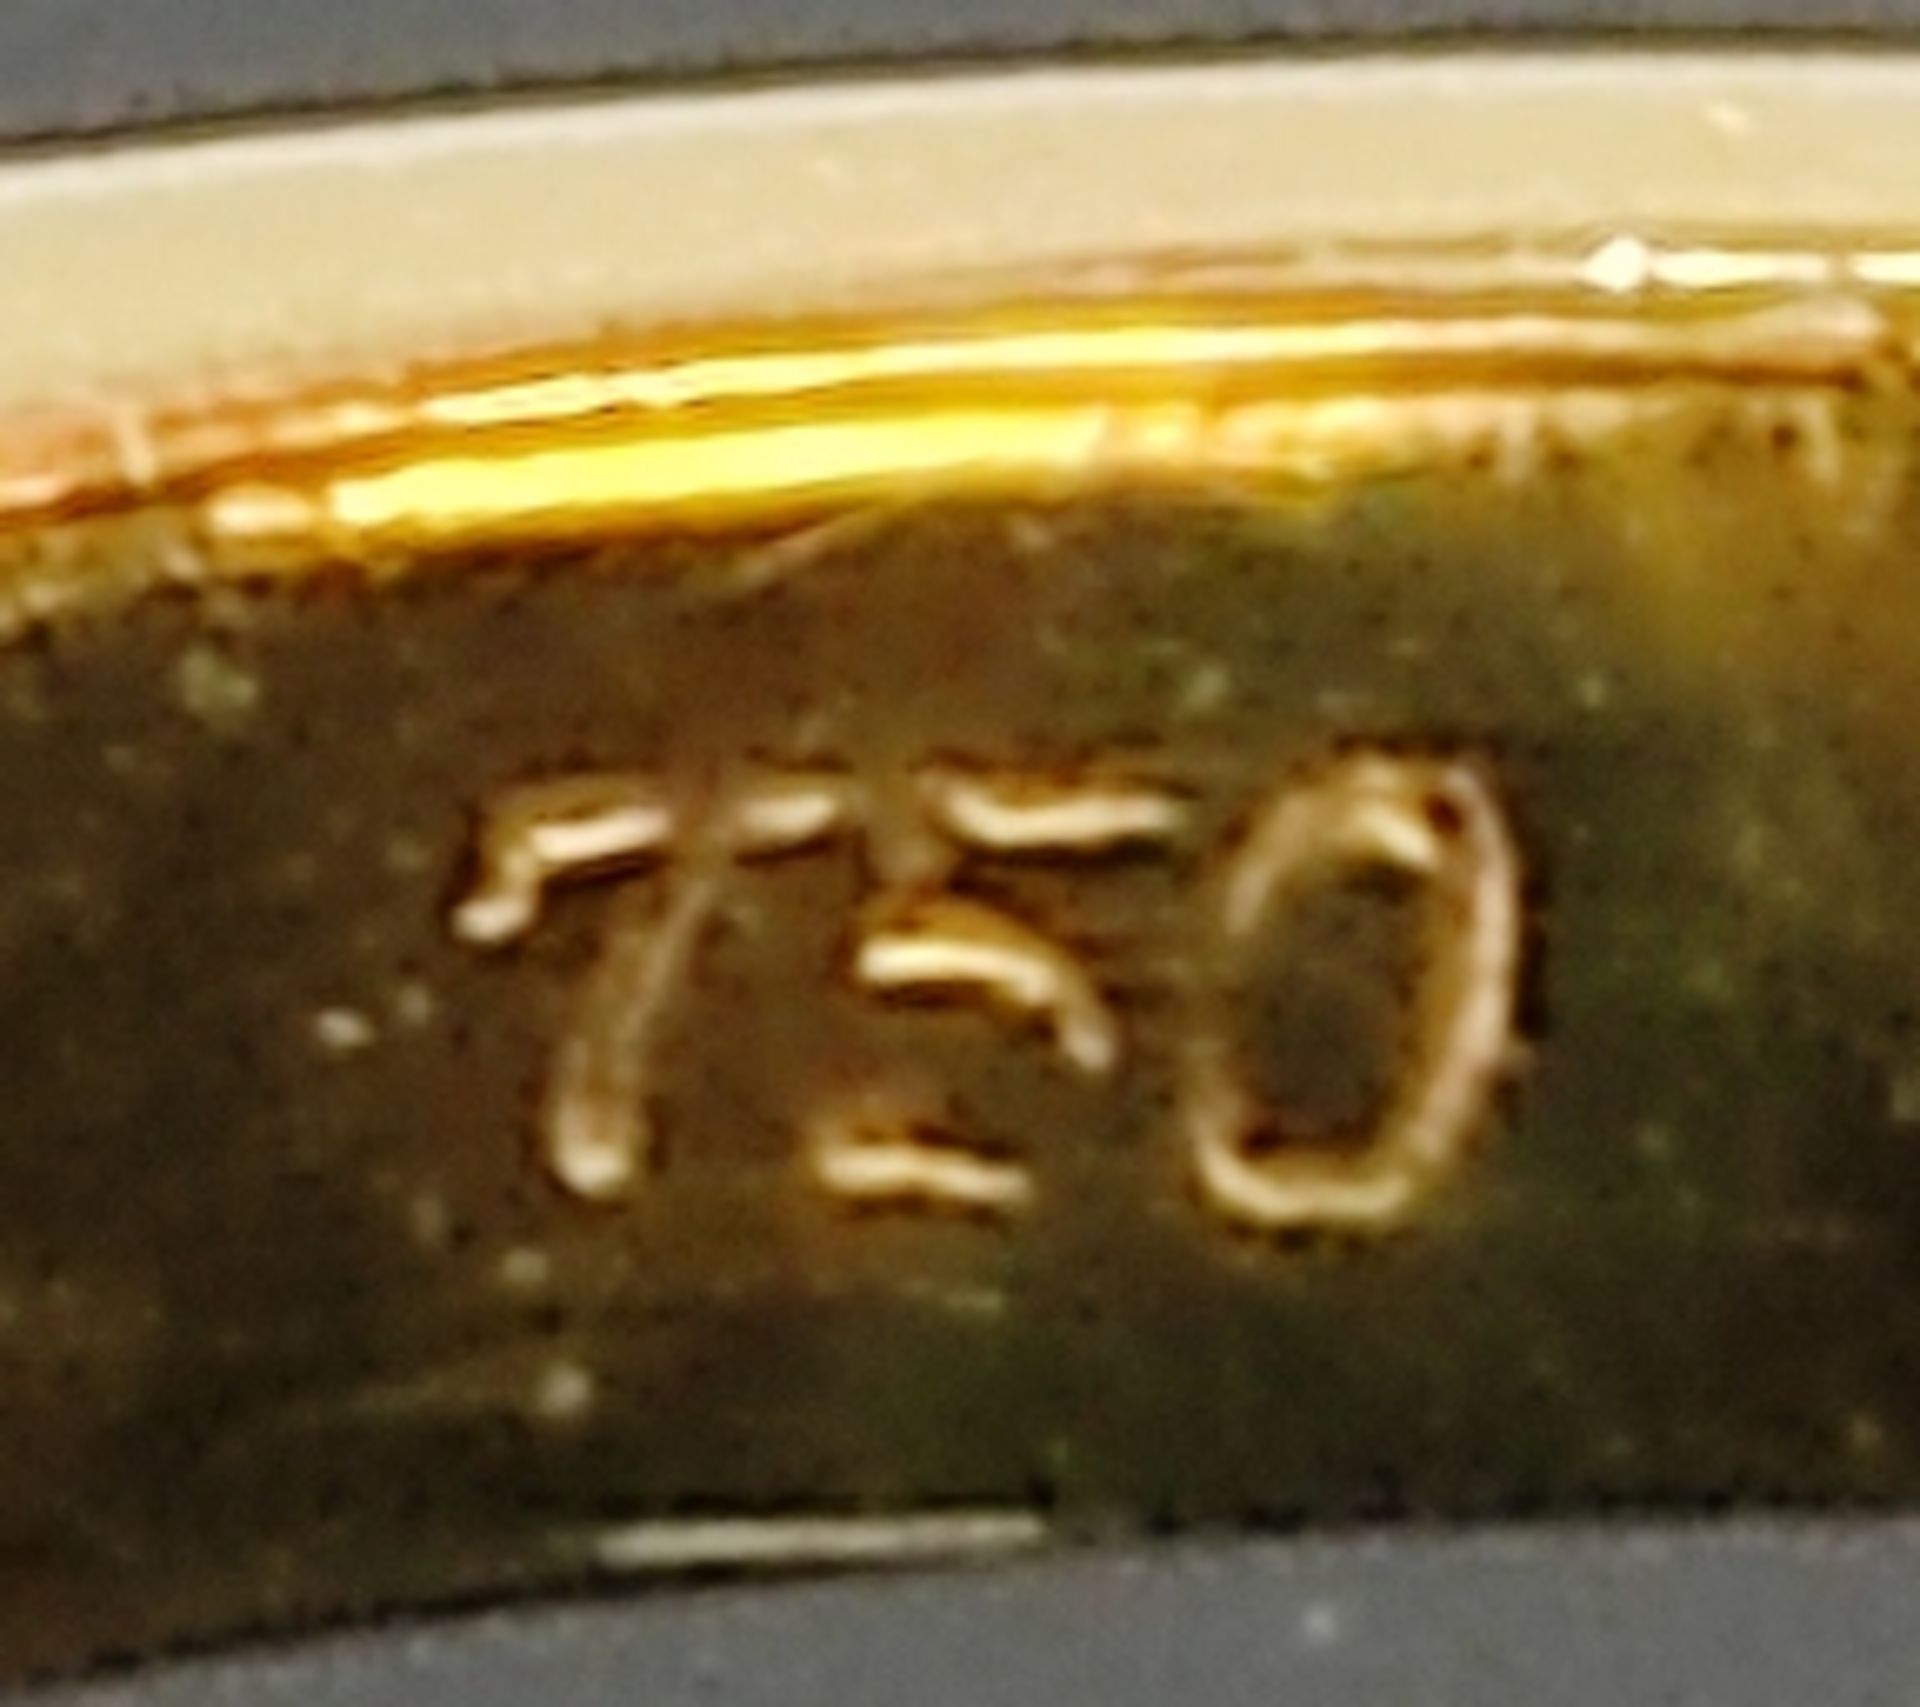 Ring, besetzt mit 13 Brillanten, 5 Saphiren und 5 Rubinen, 750/18K Gelbgold, 3,9g, Ringgröße 55 - Bild 4 aus 4